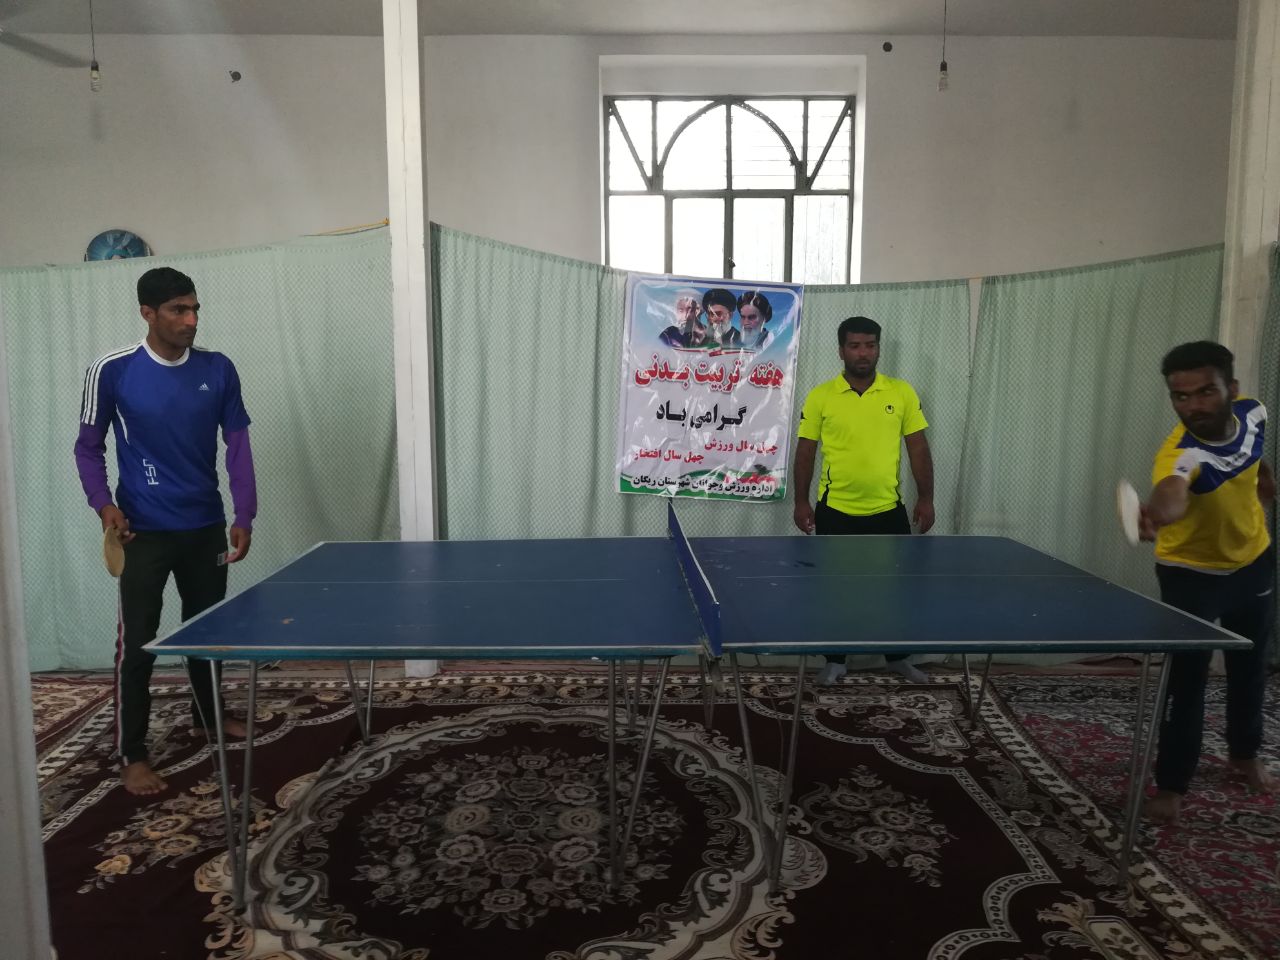 آغاز مسابقات تنیس روی میز جام مساجد و محلات در ریگان